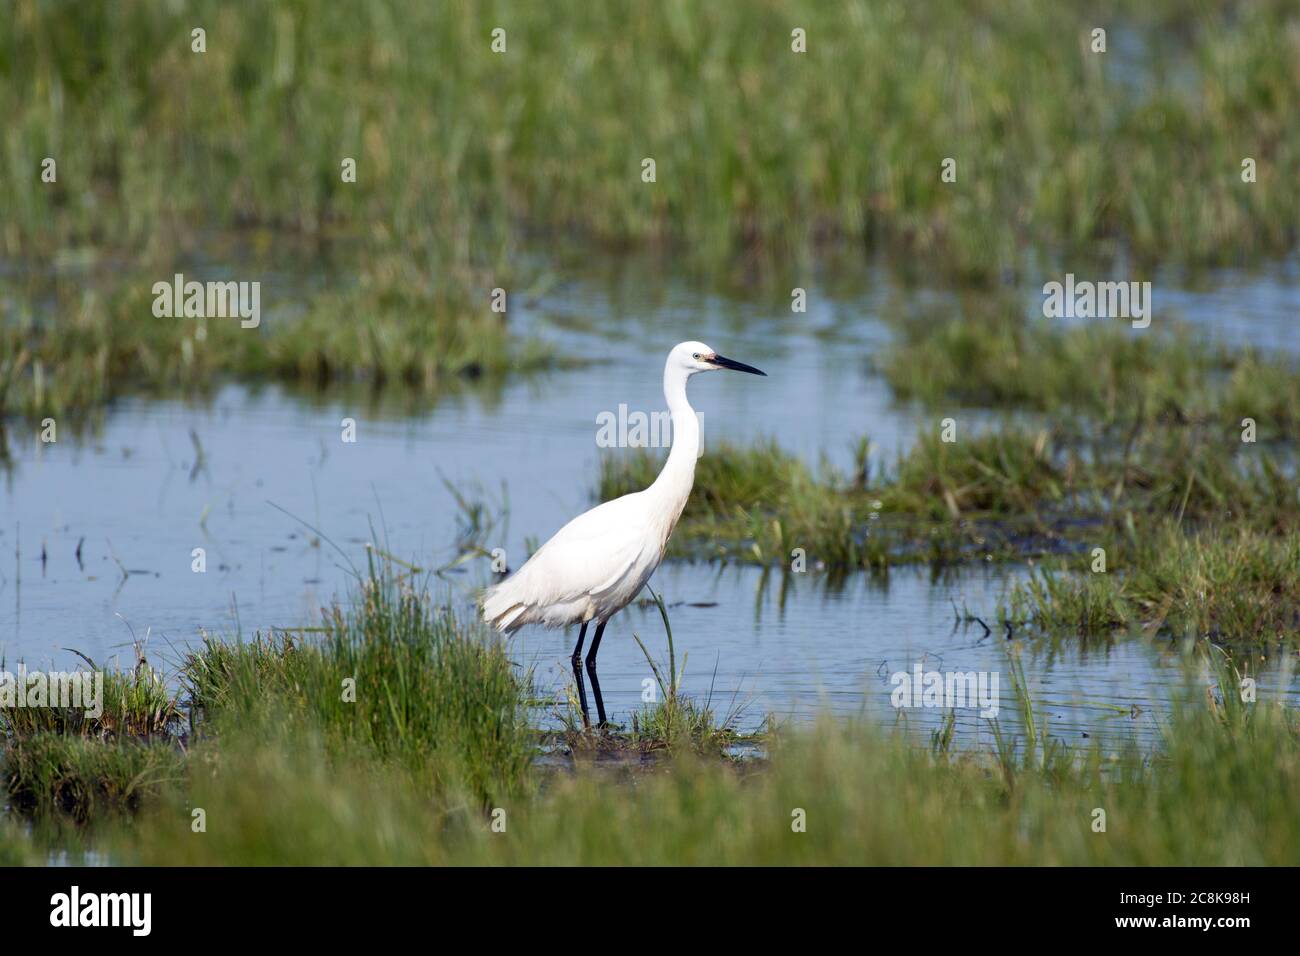 Little egret on marsh Stock Photo